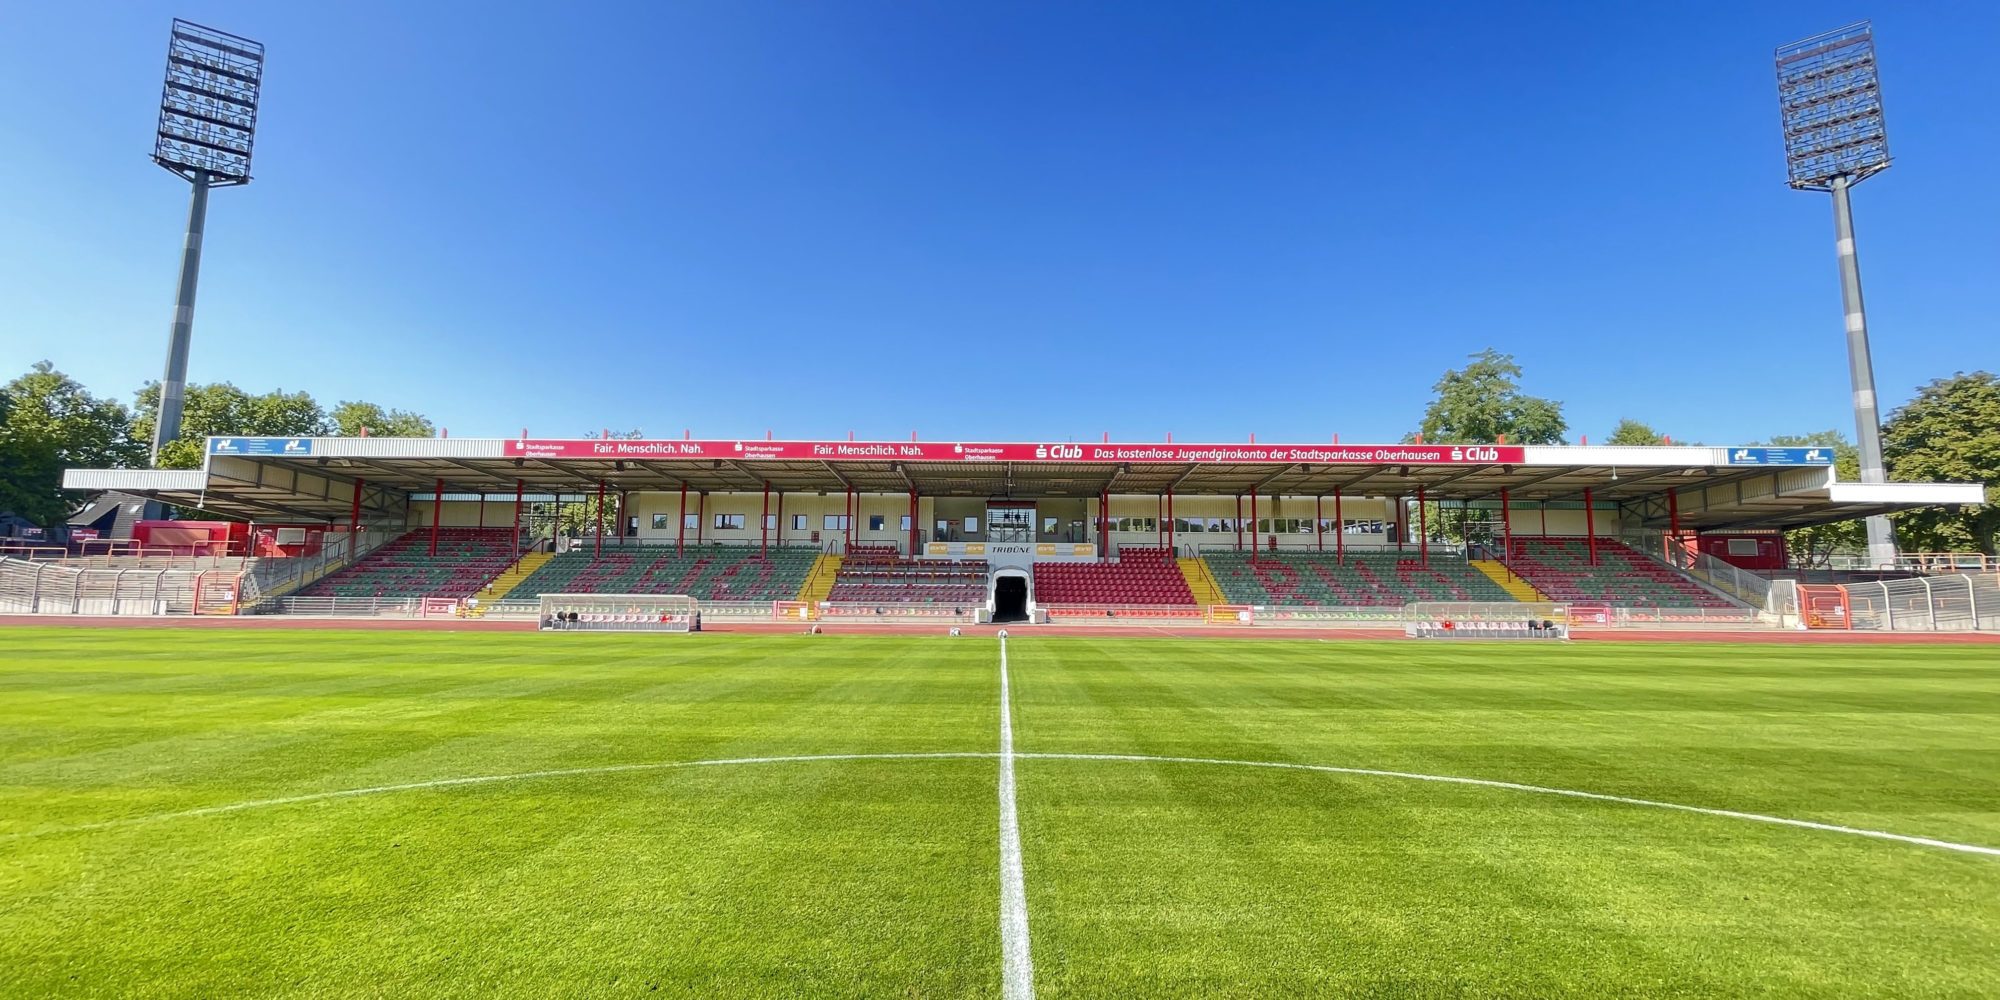 Resim, Oberhausen'deki Niederrhein Stadyumu'nu gösteriyor.